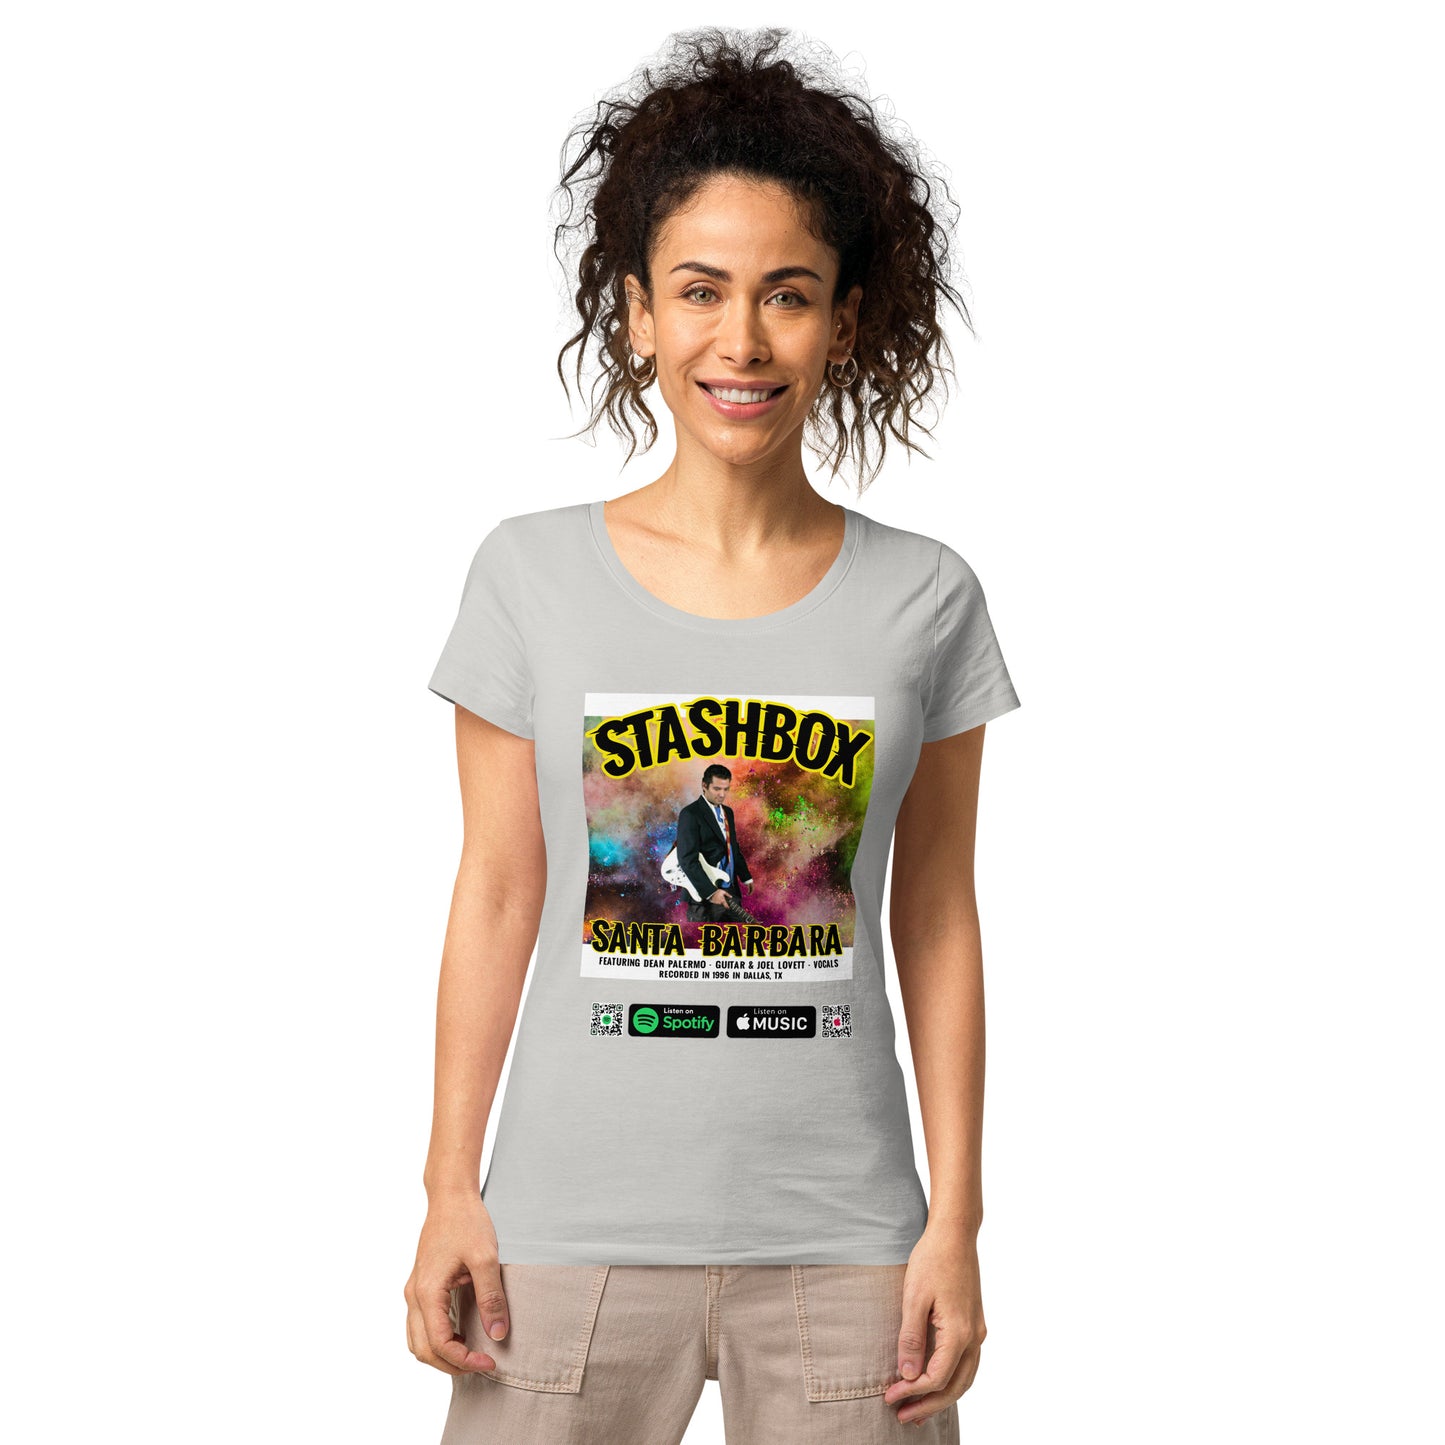 Women’s Basic Organic T-Shirt Santa Barbara Stashbox 025